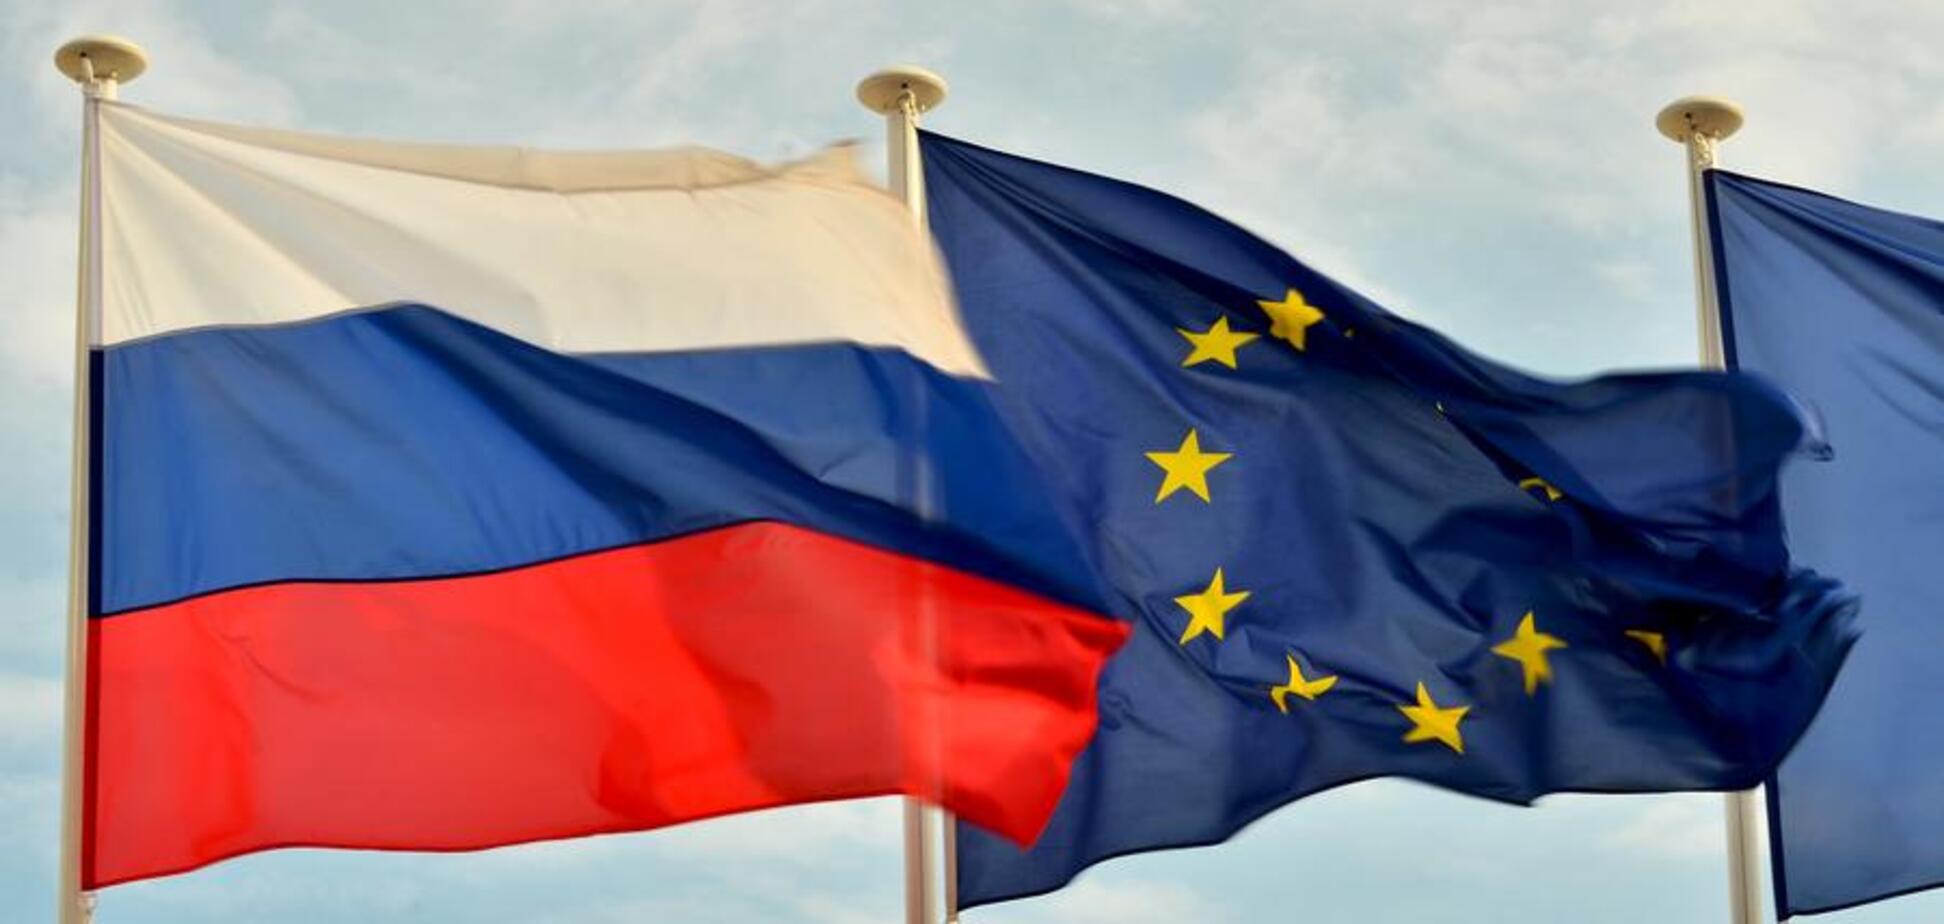 Британcкий экс-премьер хотел принять Россию в ЕС - FT